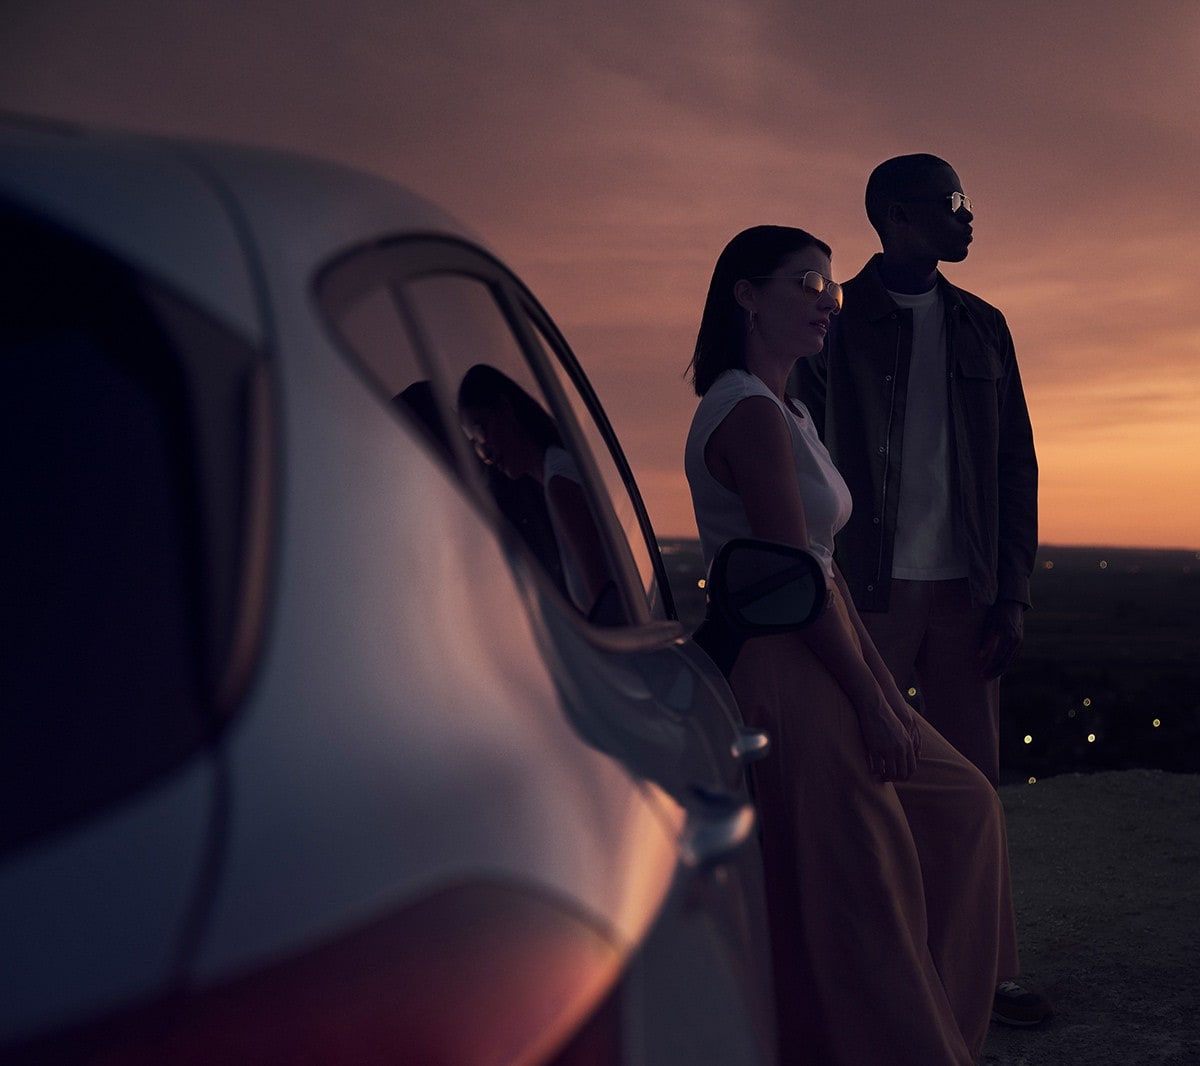 Ford Fiesta blu. Vista posteriore al tramonto con due persone sullo sfondo.